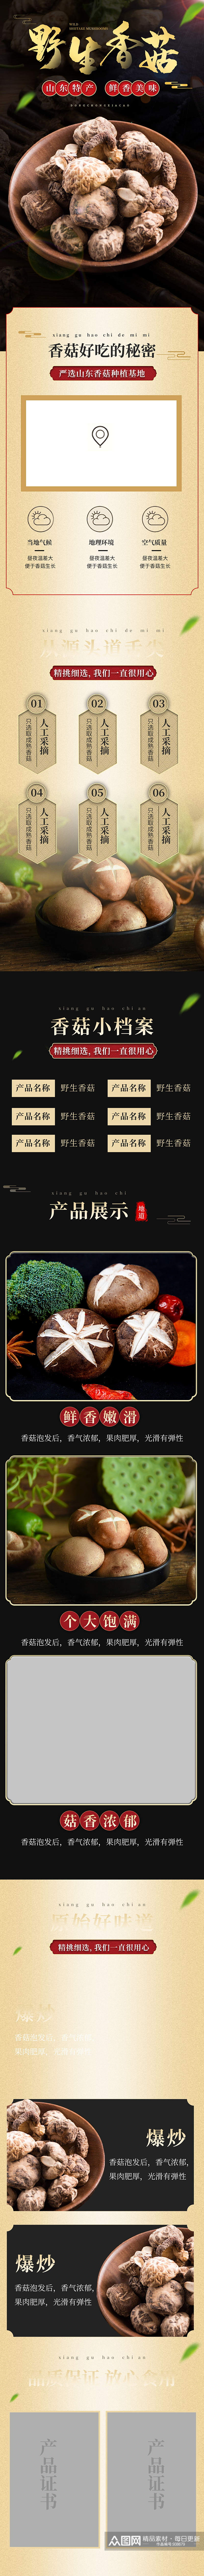 大气食品生鲜土特产香菇详情页模板素材